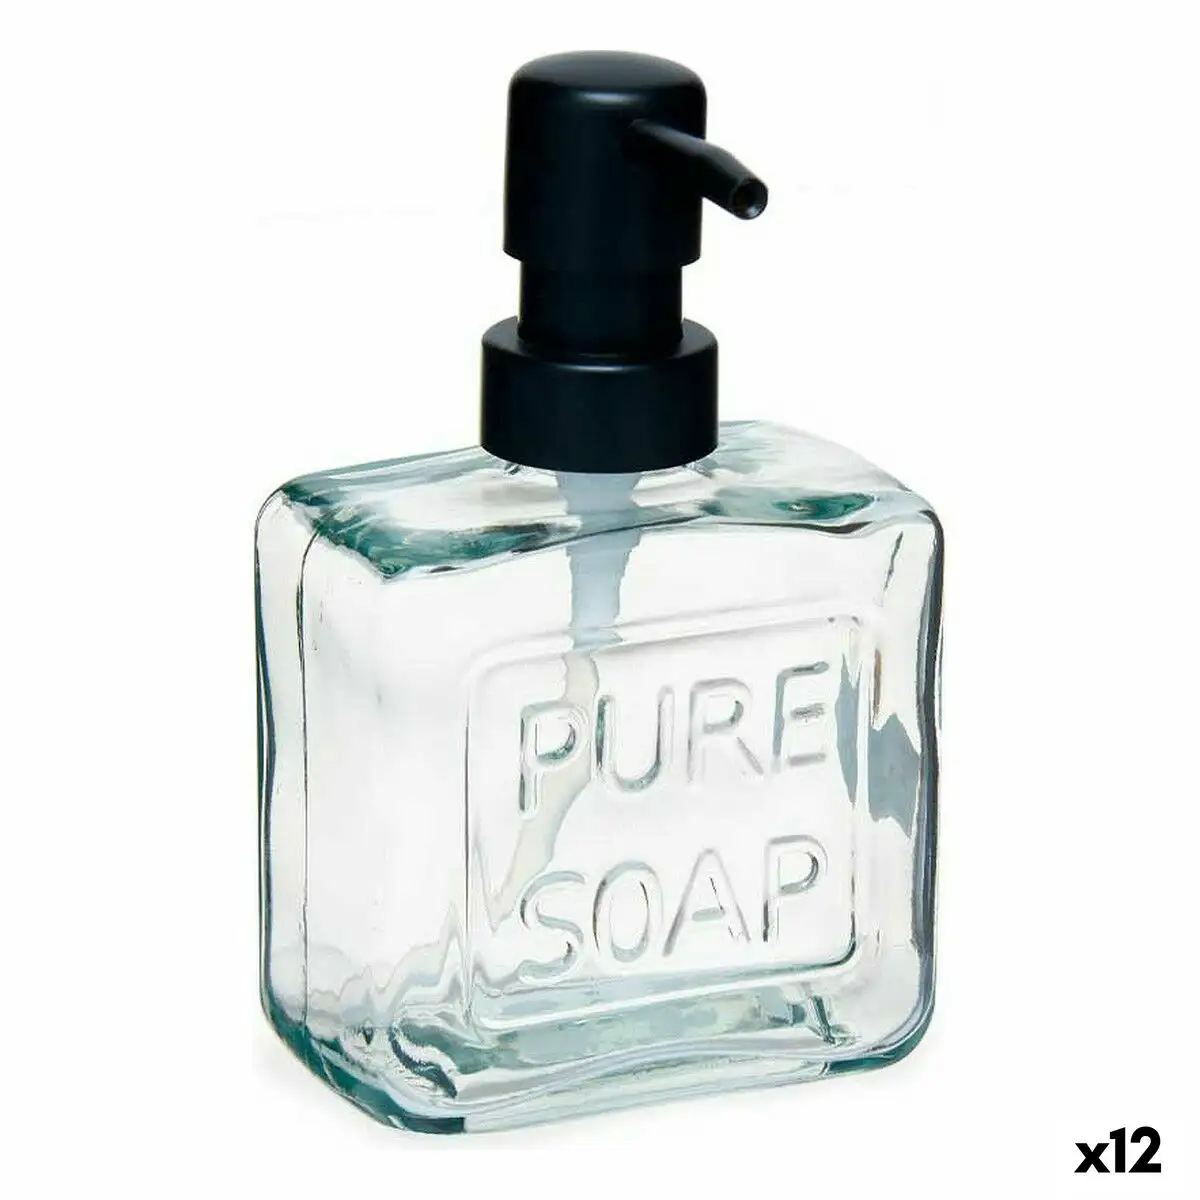 Distributeur de savon pure soap 250 ml verre transparent plastique 12 unites _5460. DIAYTAR SENEGAL - Votre Destination Shopping Exquise. Explorez notre boutique en ligne et découvrez des trésors qui ajoutent une touche de sophistication à votre style et à votre espace.